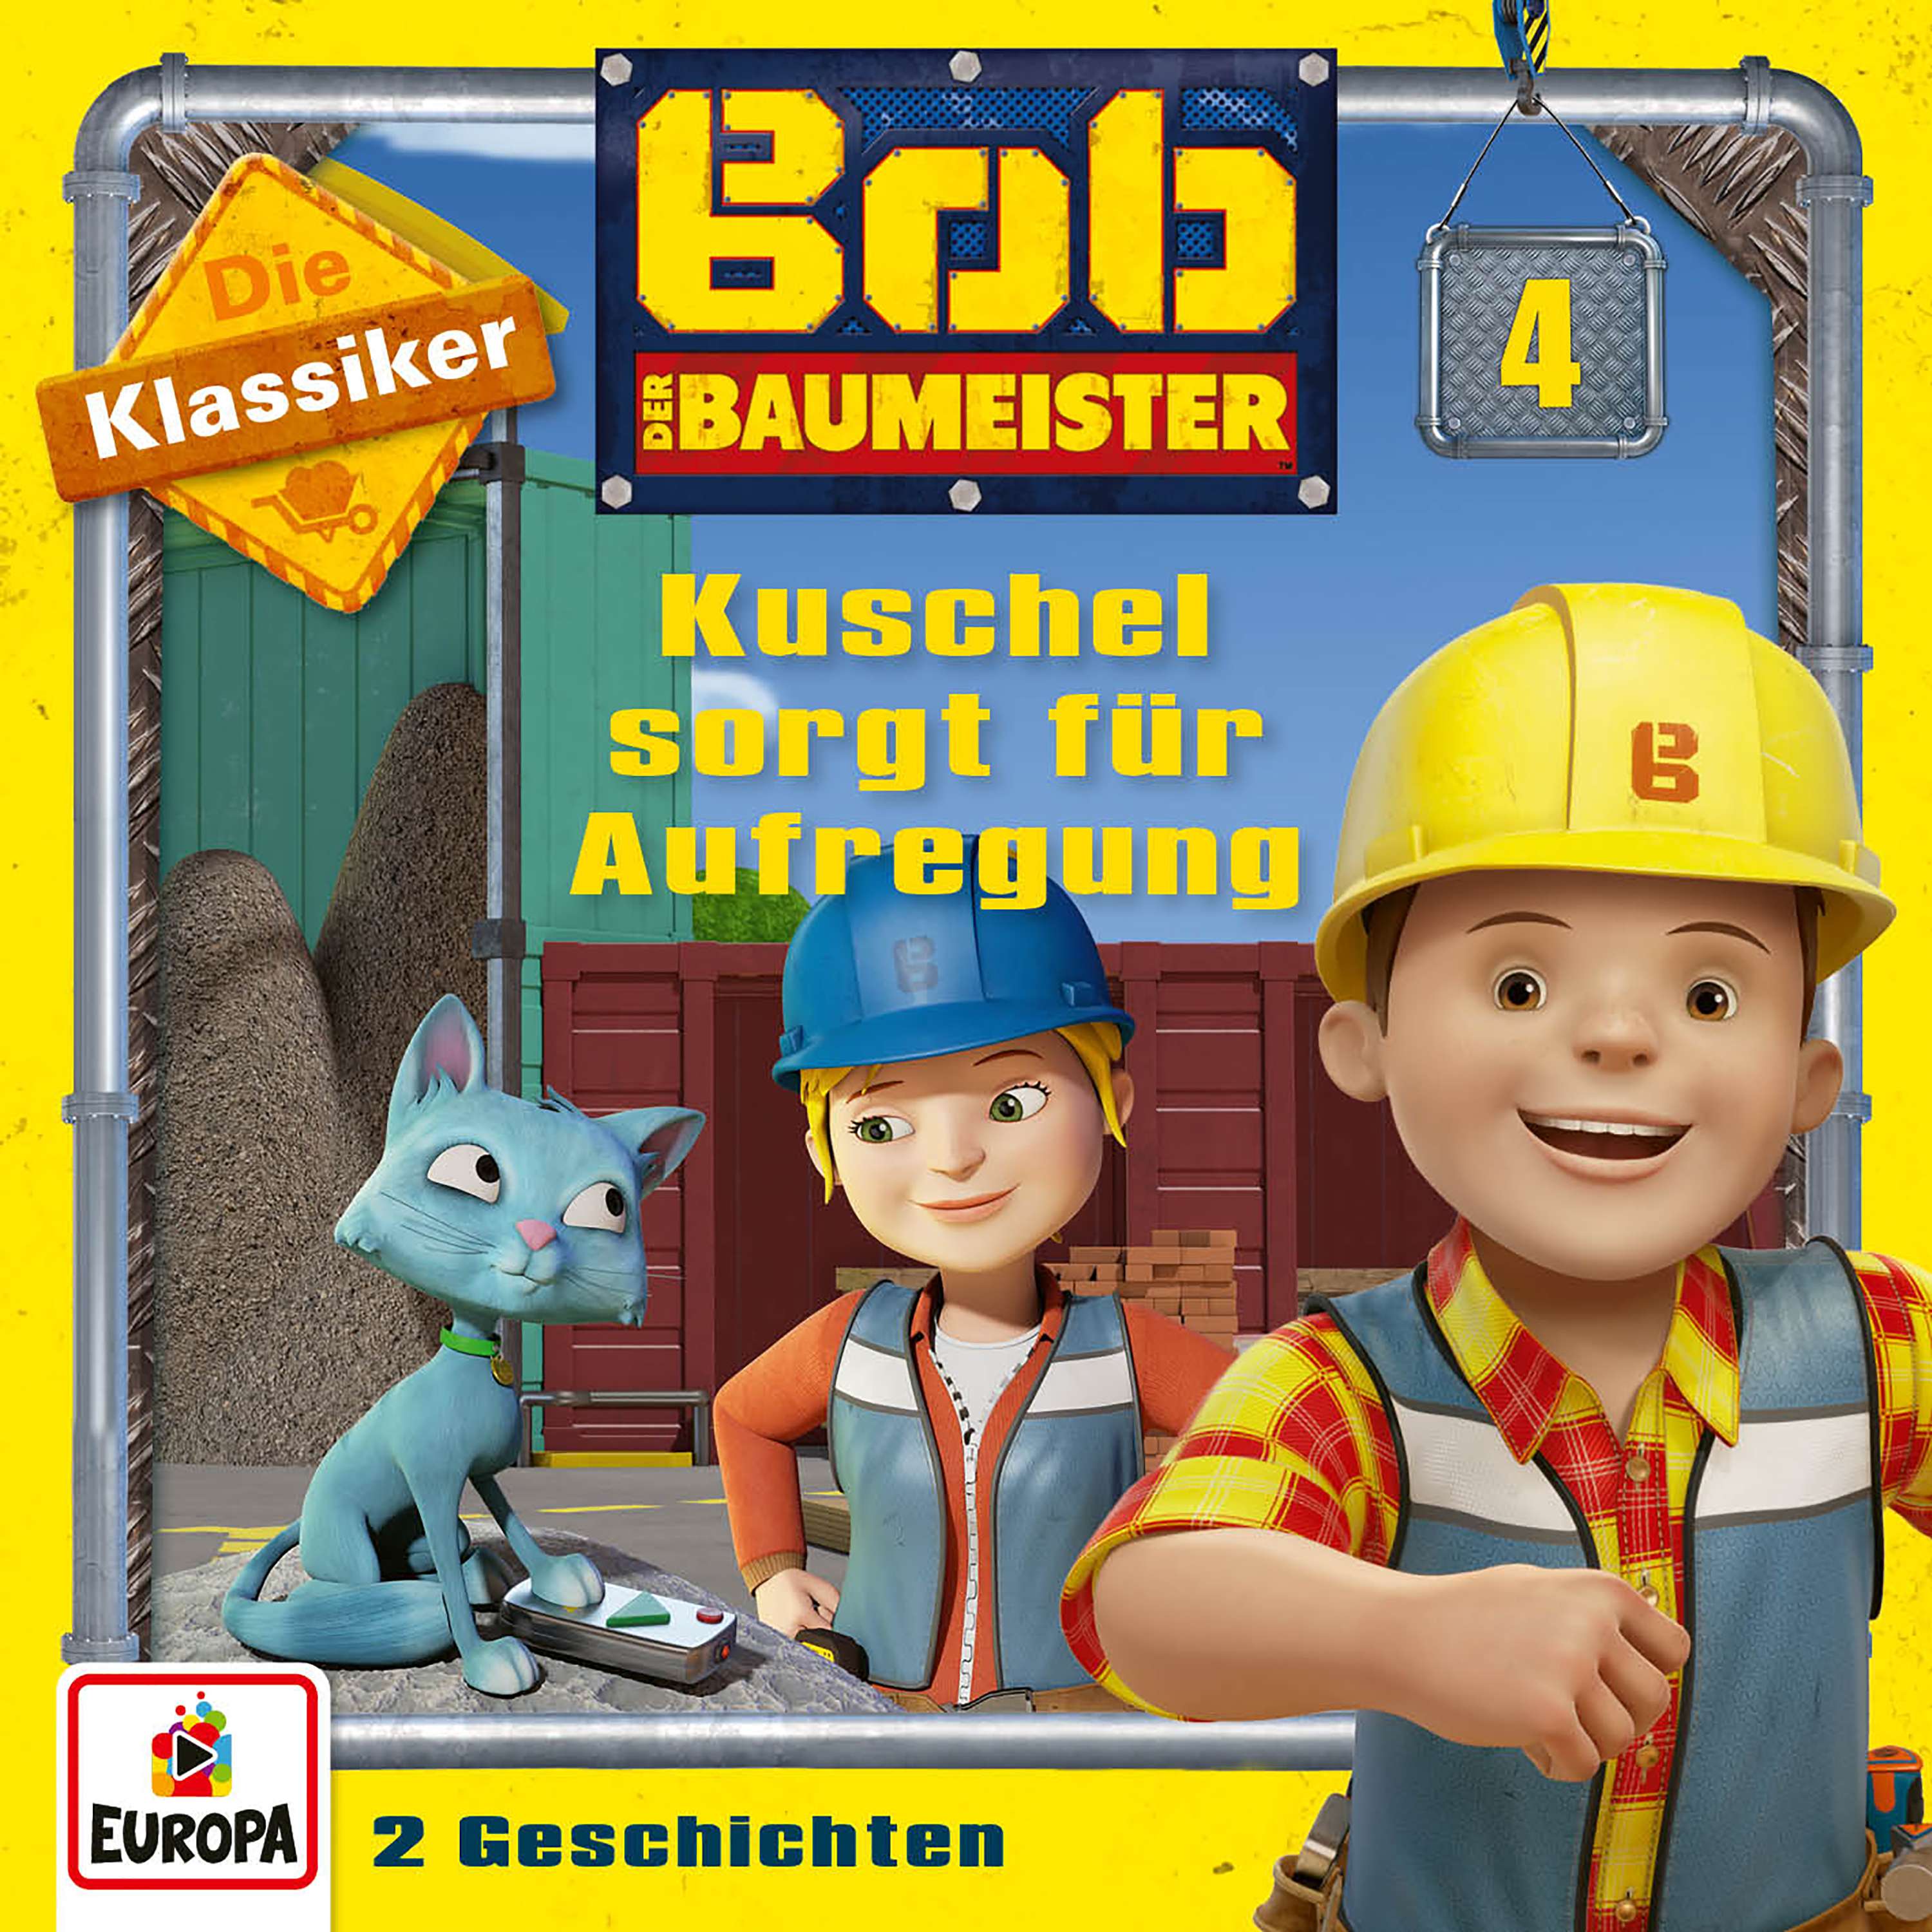 Bob der Baumeister: Kuschel sorgt für Aufregung (Die Klassiker)